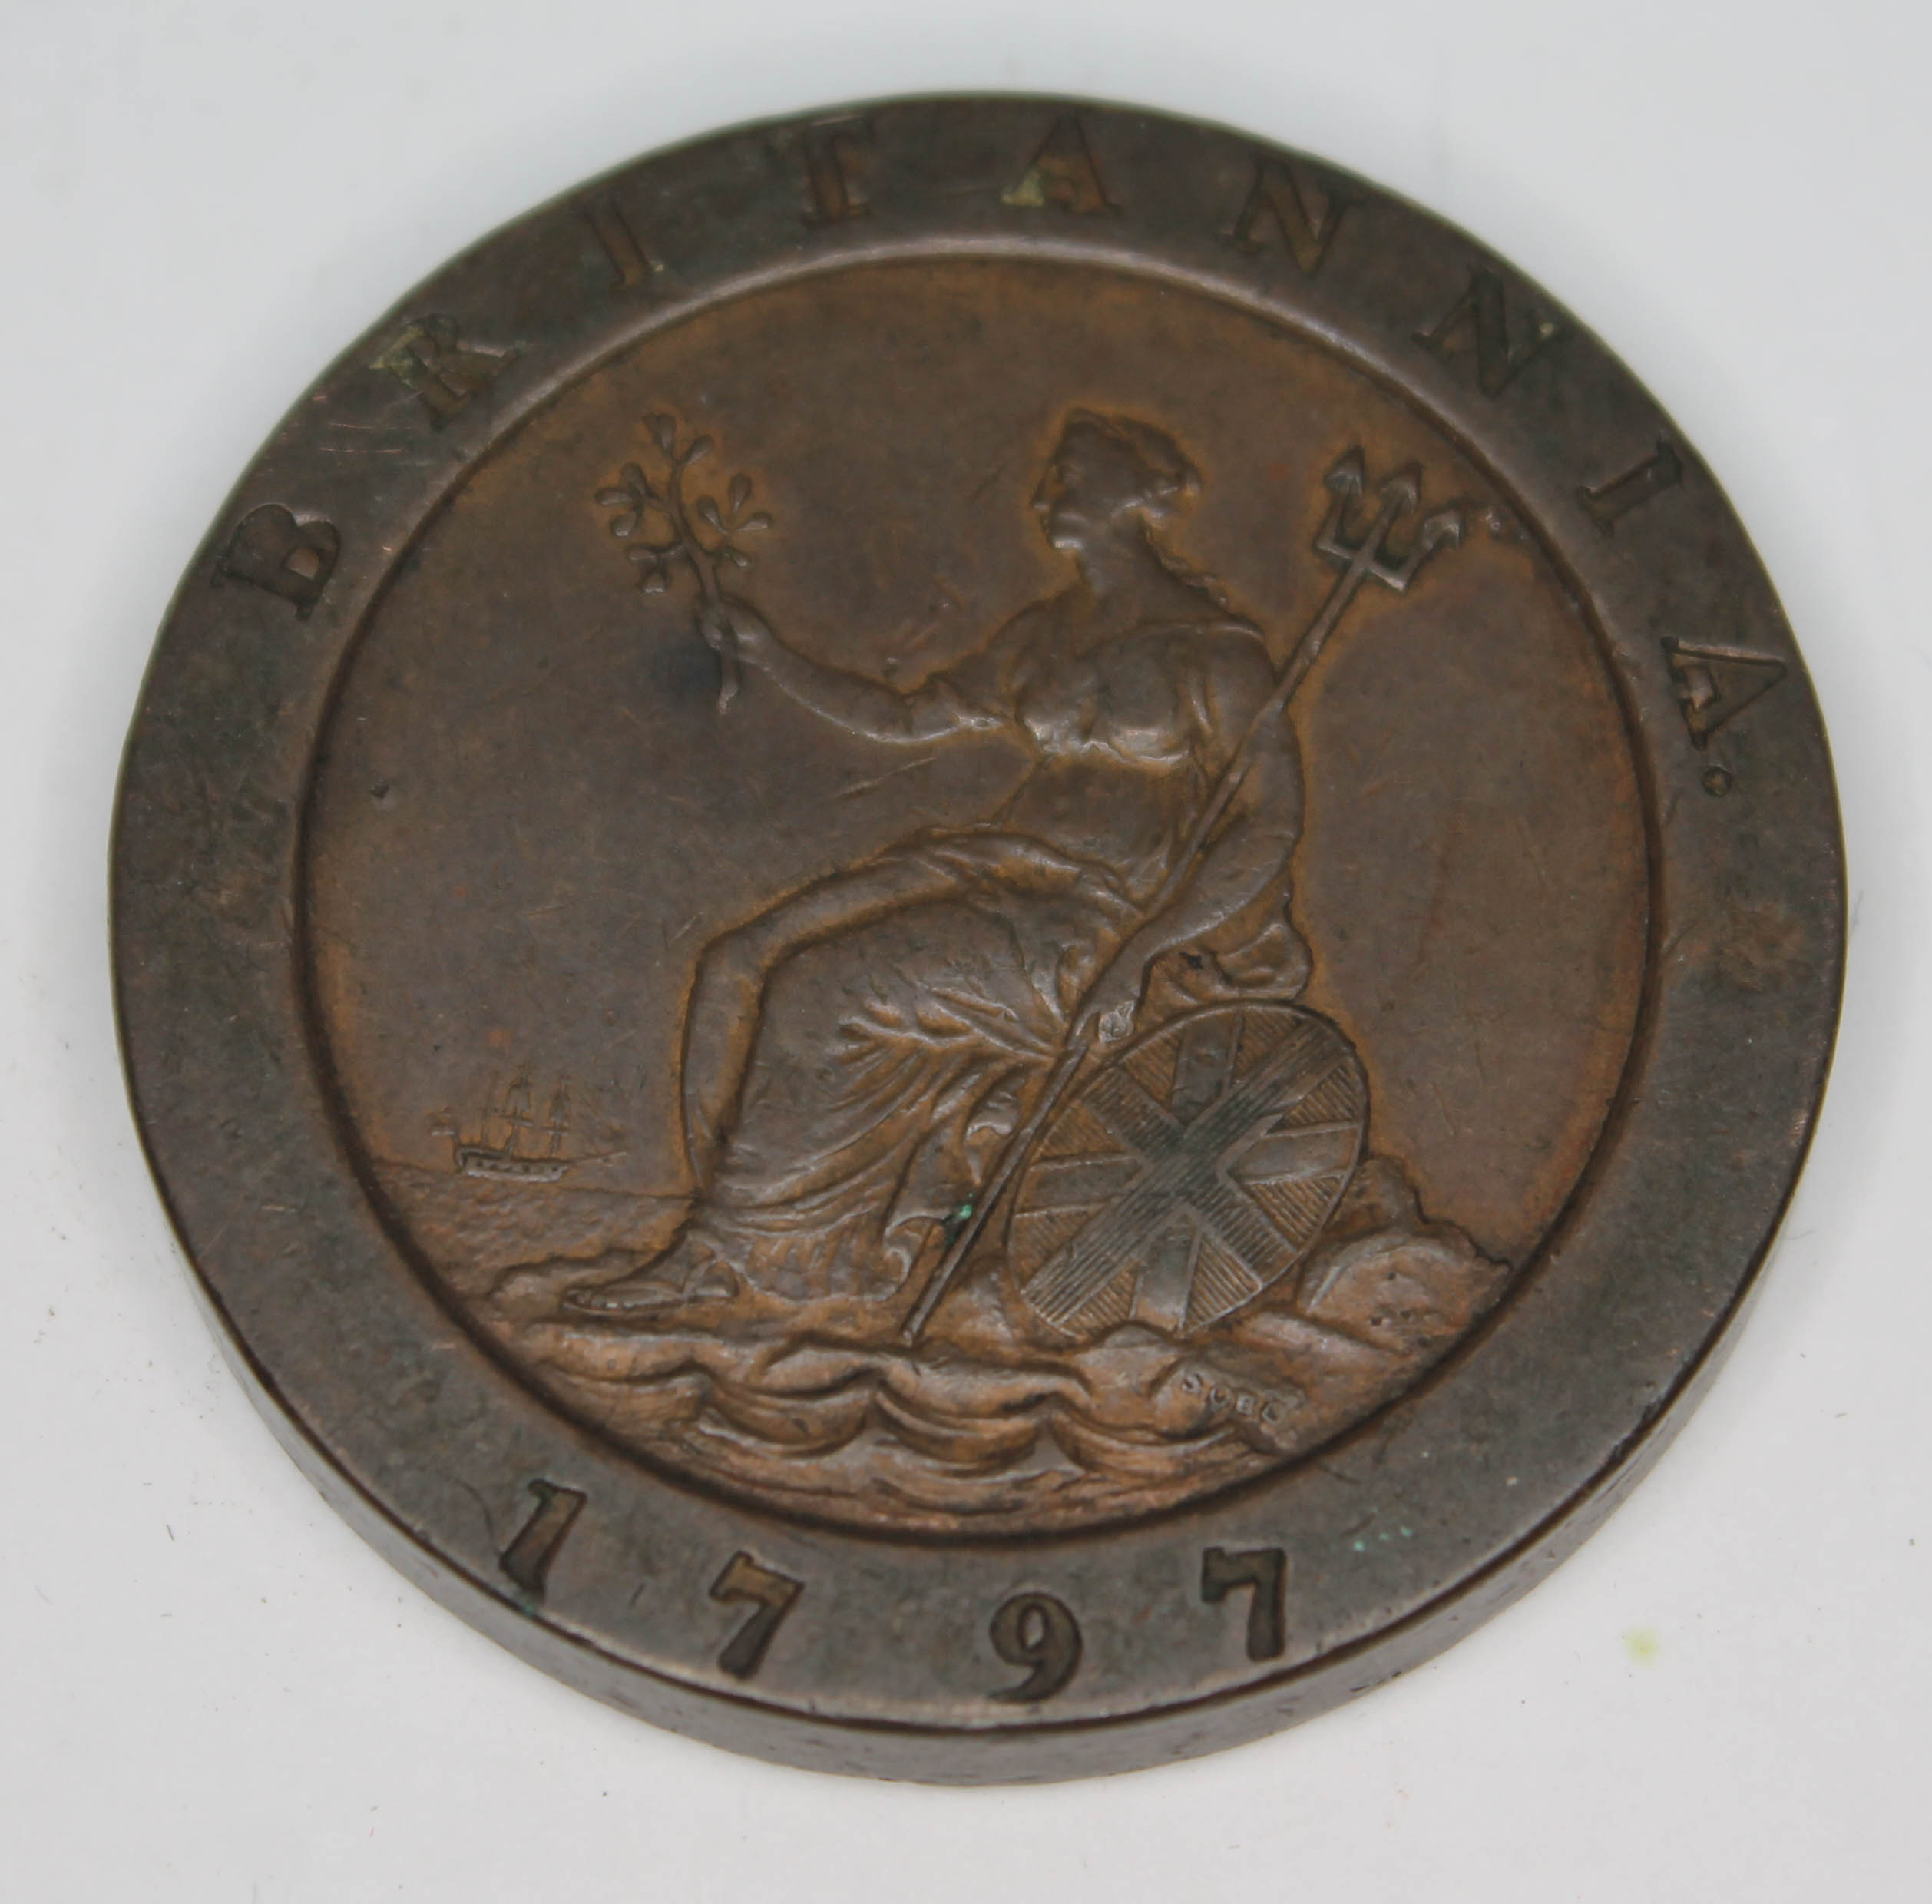 George III 1797 cartwheel penny. - Image 2 of 2